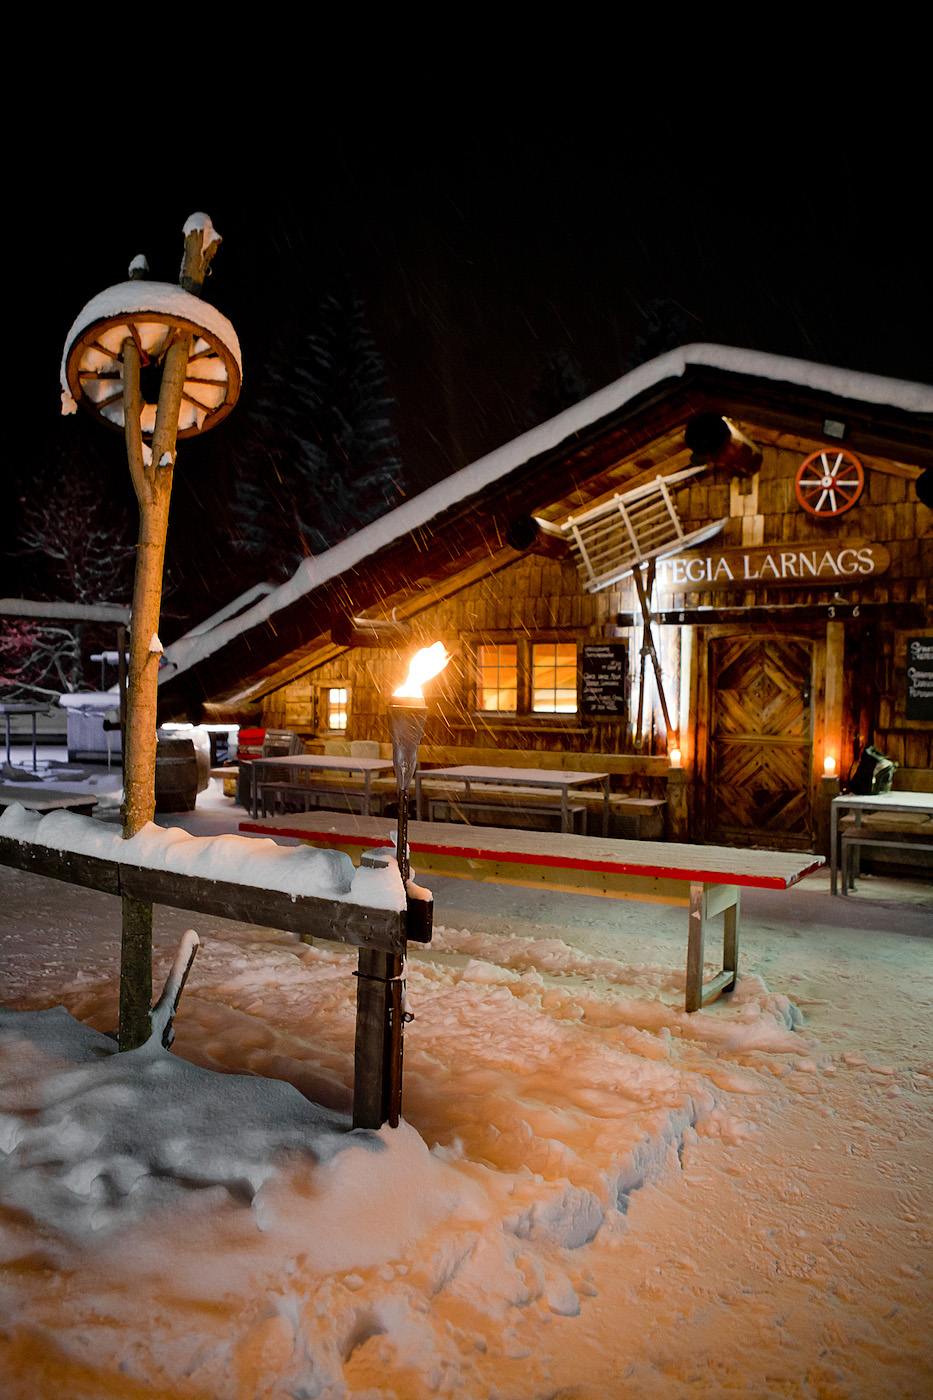 Skiferien in der Schweiz, Tegia Larnags | Skigebiet LAAX, LAAXisniceyo, Graubünden, skiing in LAAX, culinary trail LAAX/Flims, ski weekend LAAX, winter holiday